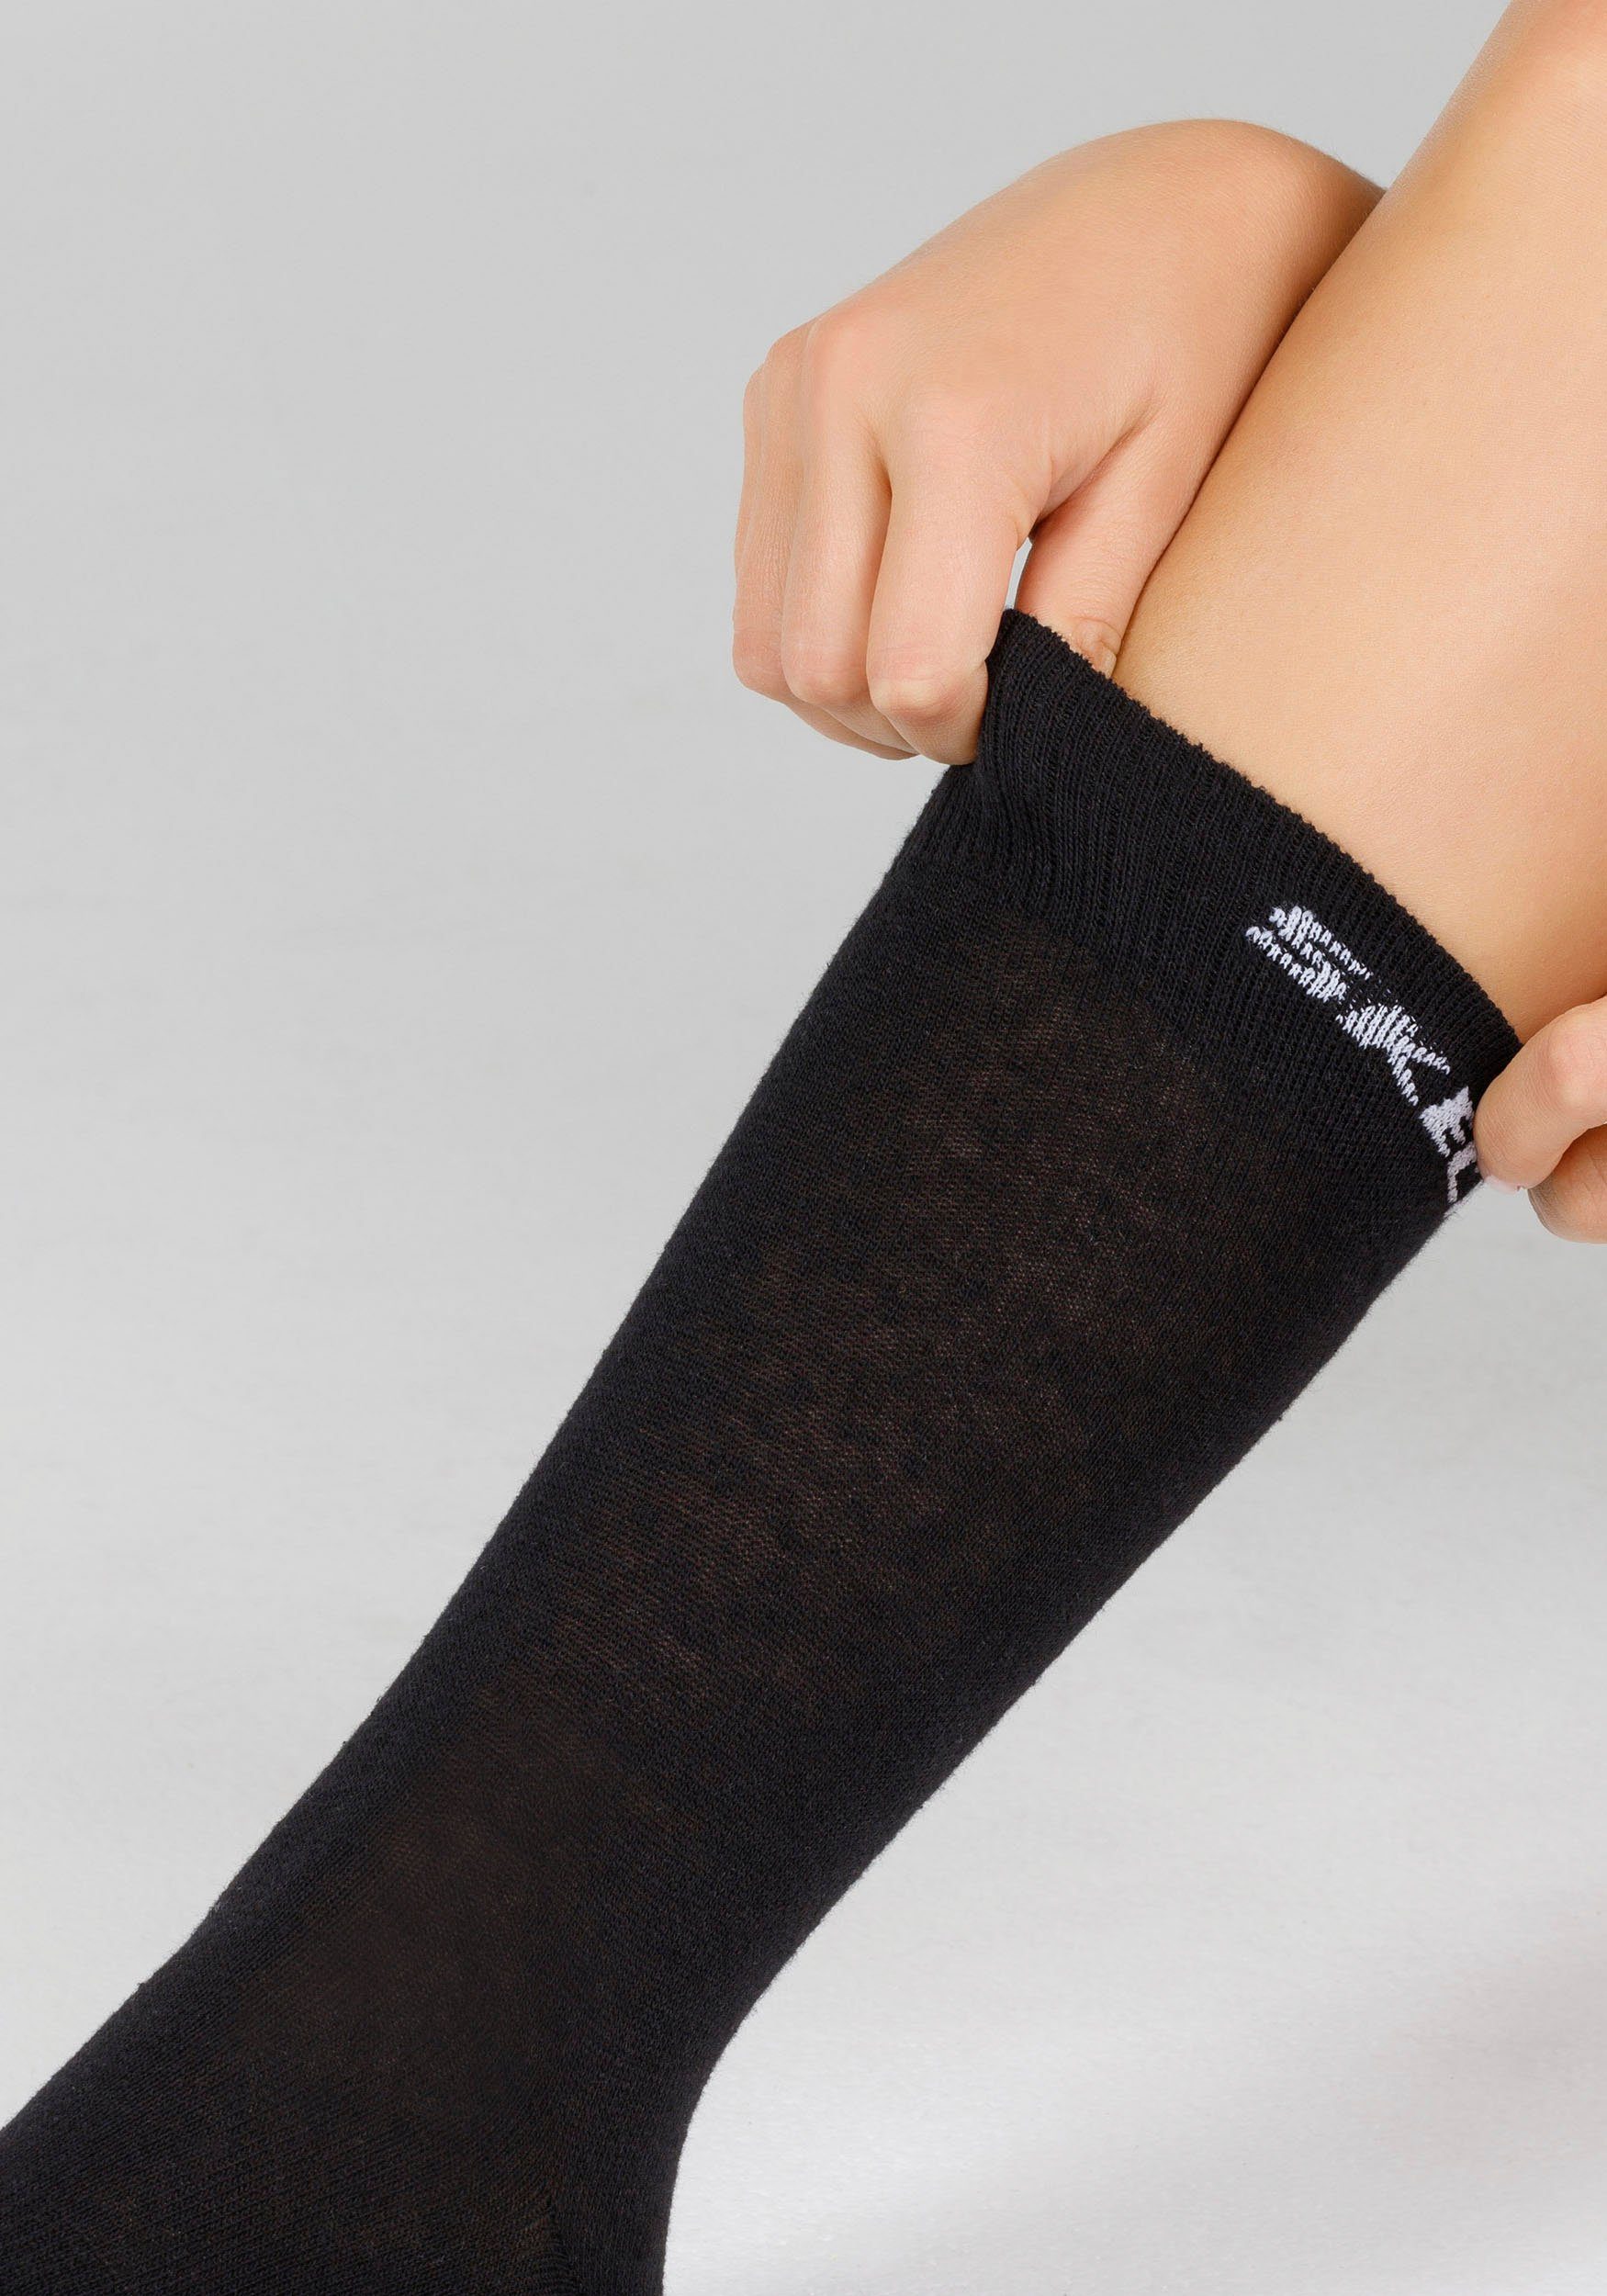 schwarz und (Packung, 6-Paar) Socken Robust verstärkter und Skechers Fersen- langlebig: Zehenbereich